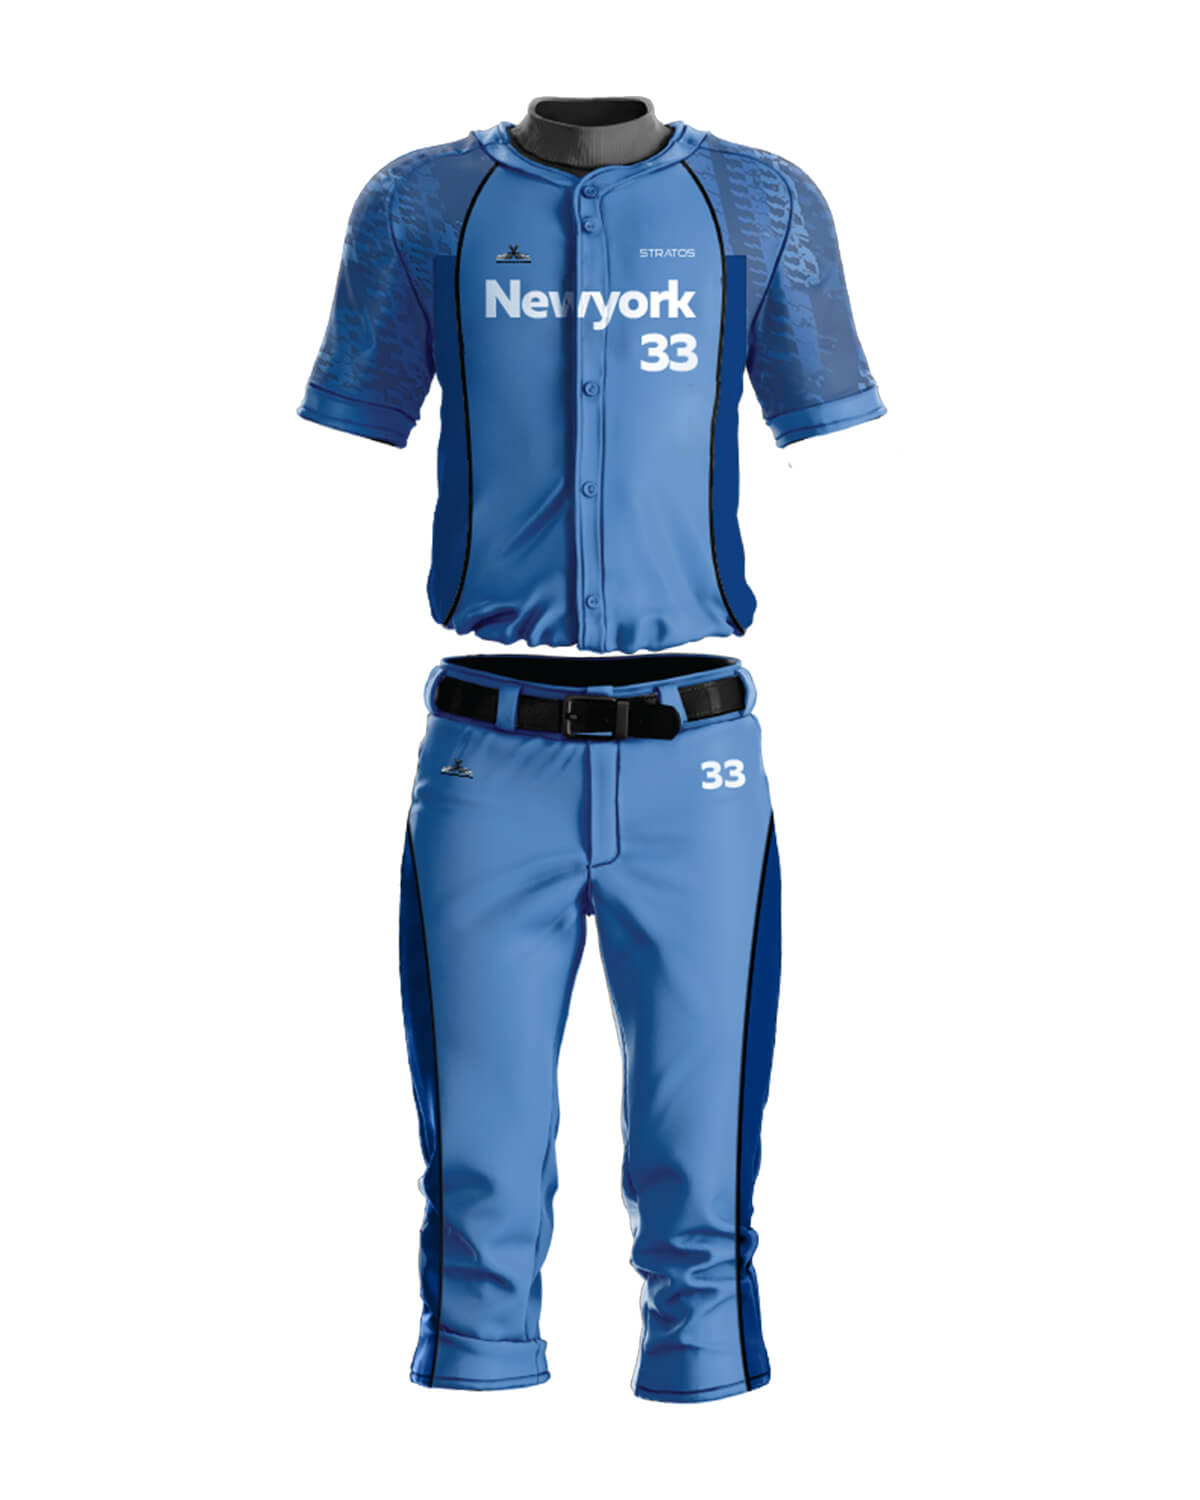 AthleisureX Full Custom Baseball Jersey - For Men